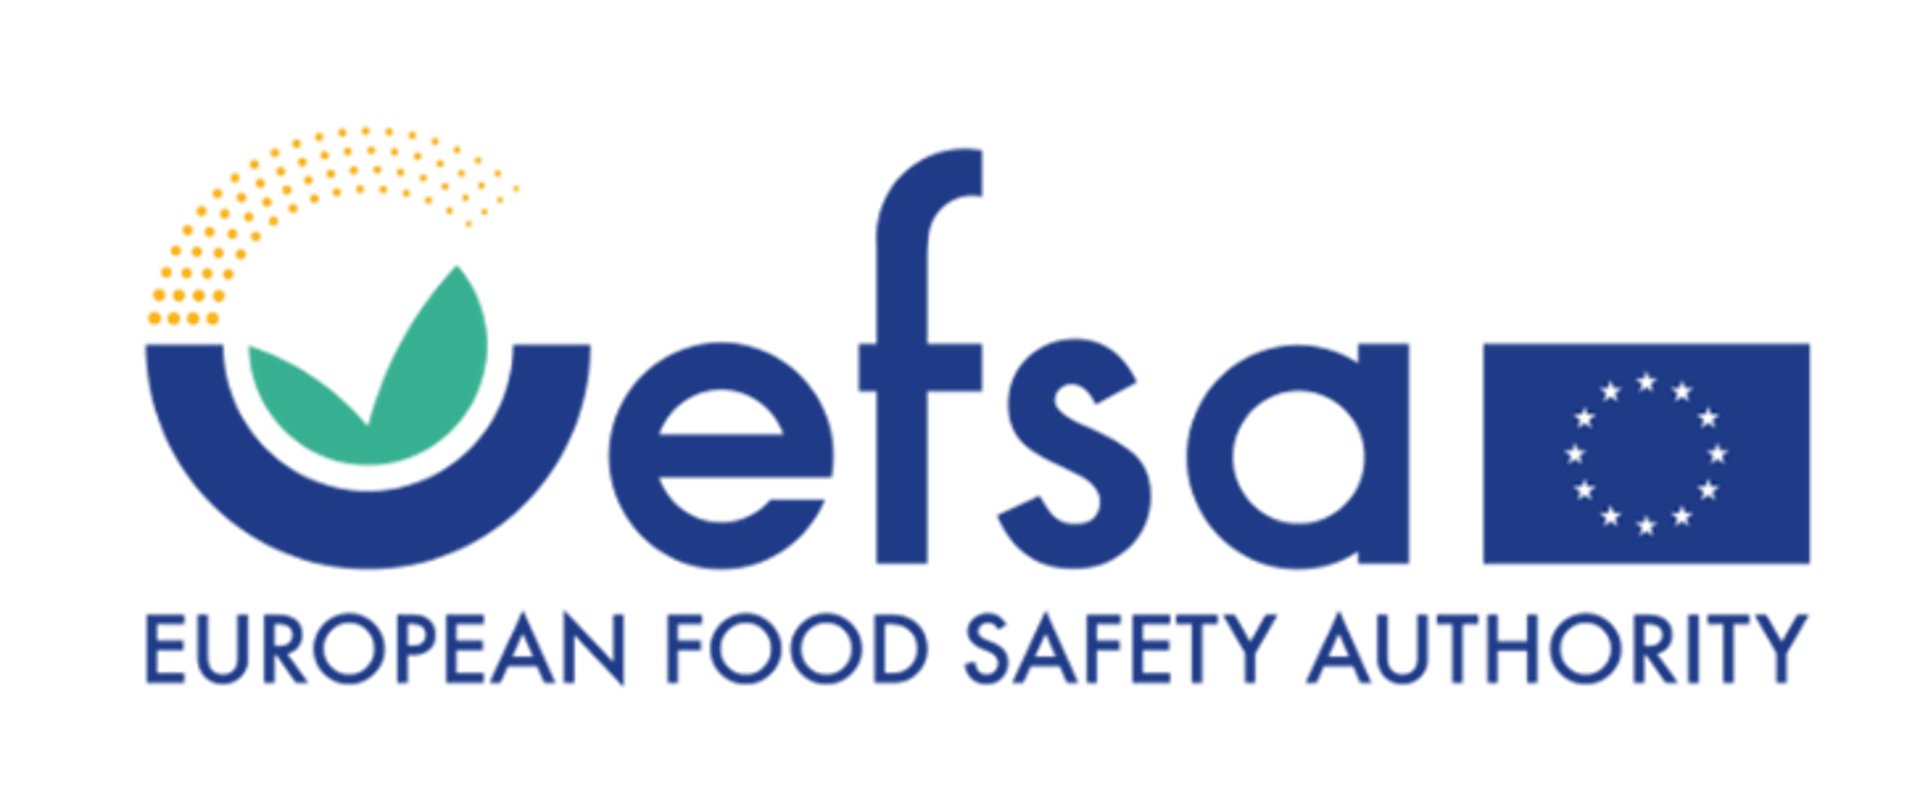 napis efsa po prawej stronie napisu flaga Uni Europejskiej poniżej napis EUROPEAN FOOD SAFETY AUTHORITY 